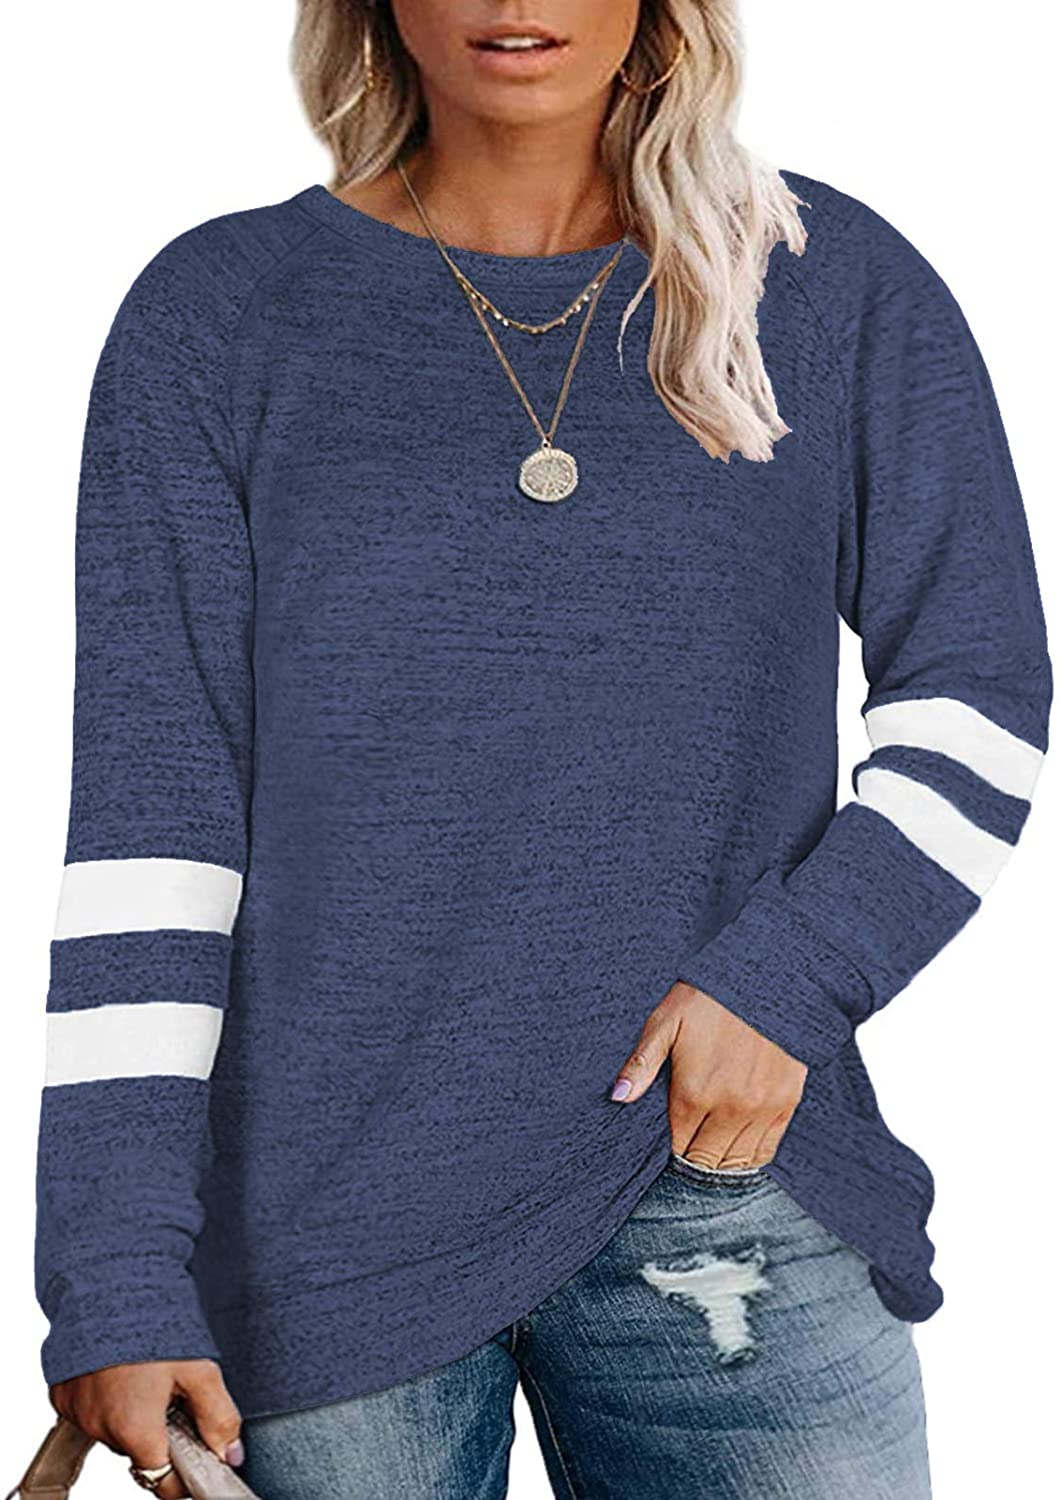 DOLNINE Plus Size Sweatshirts for Women Long Sleeve Oversized Tunic Tops 